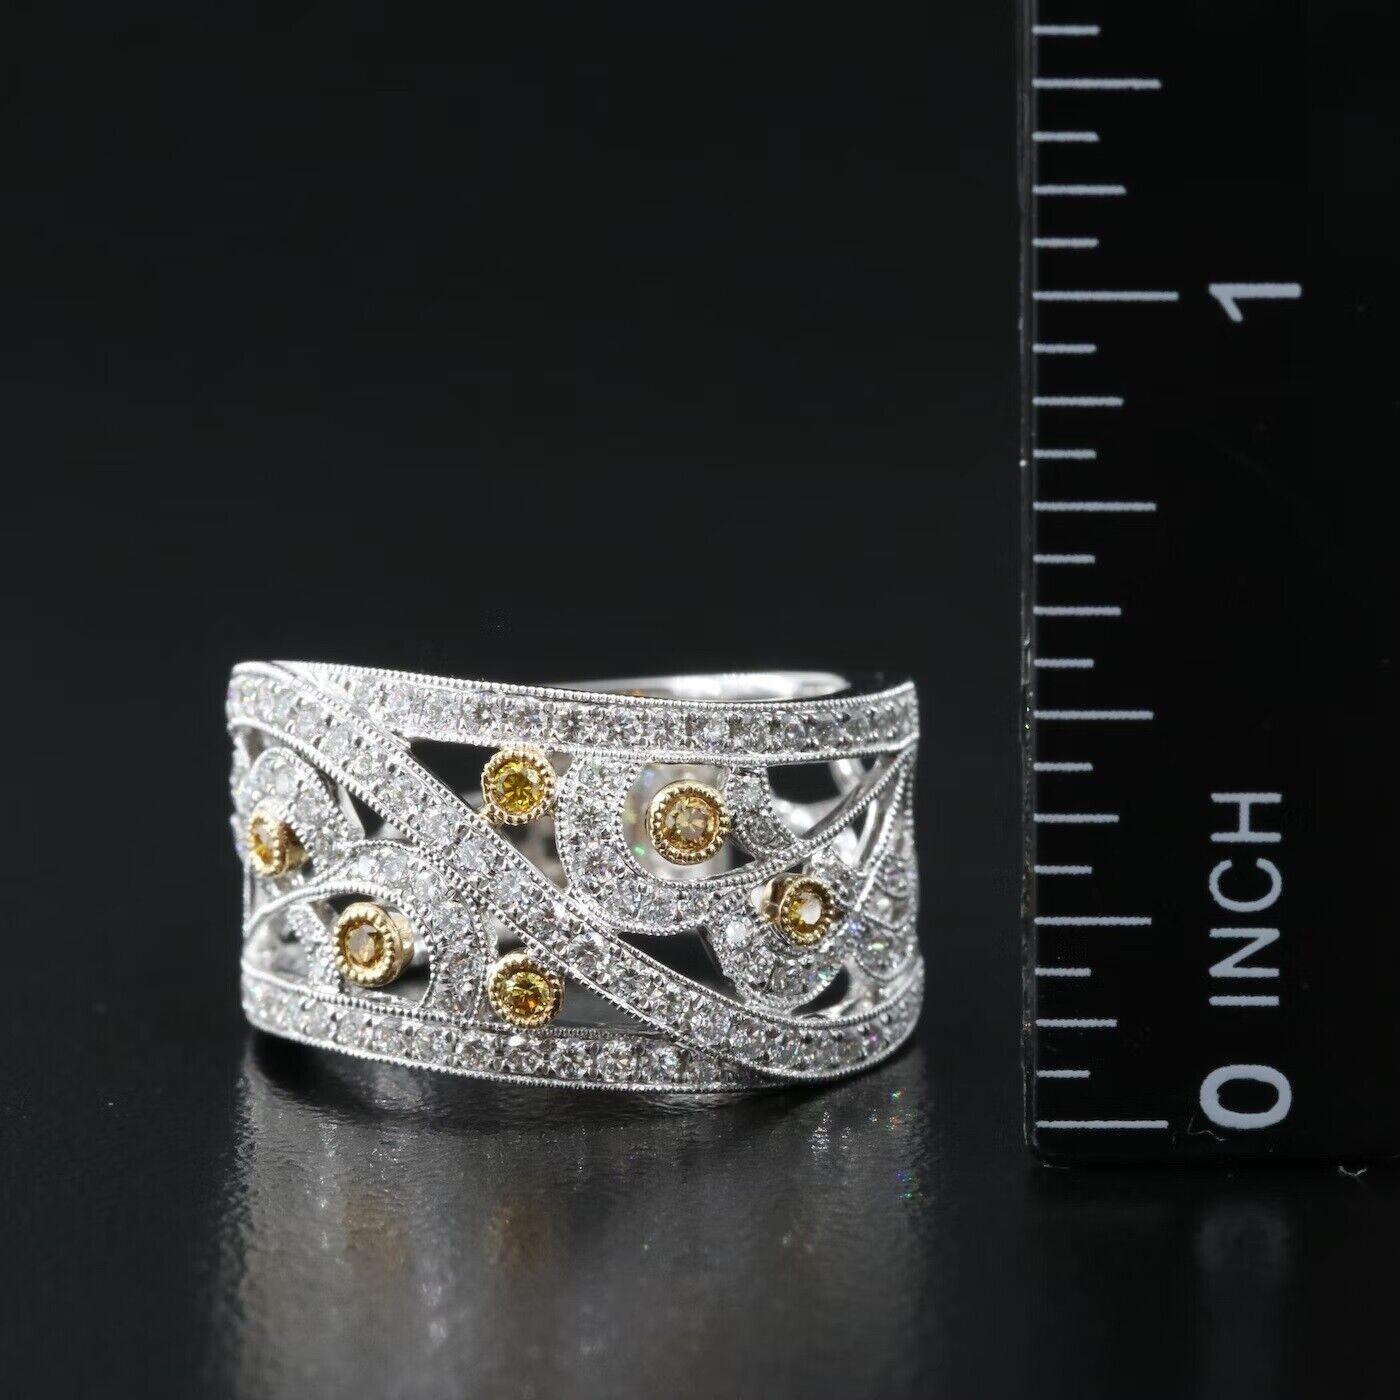 Women's $9500 / New / Jye’s Designer 1.03 Ct Diamond Ring / 18K White Gold / Super Fancy For Sale